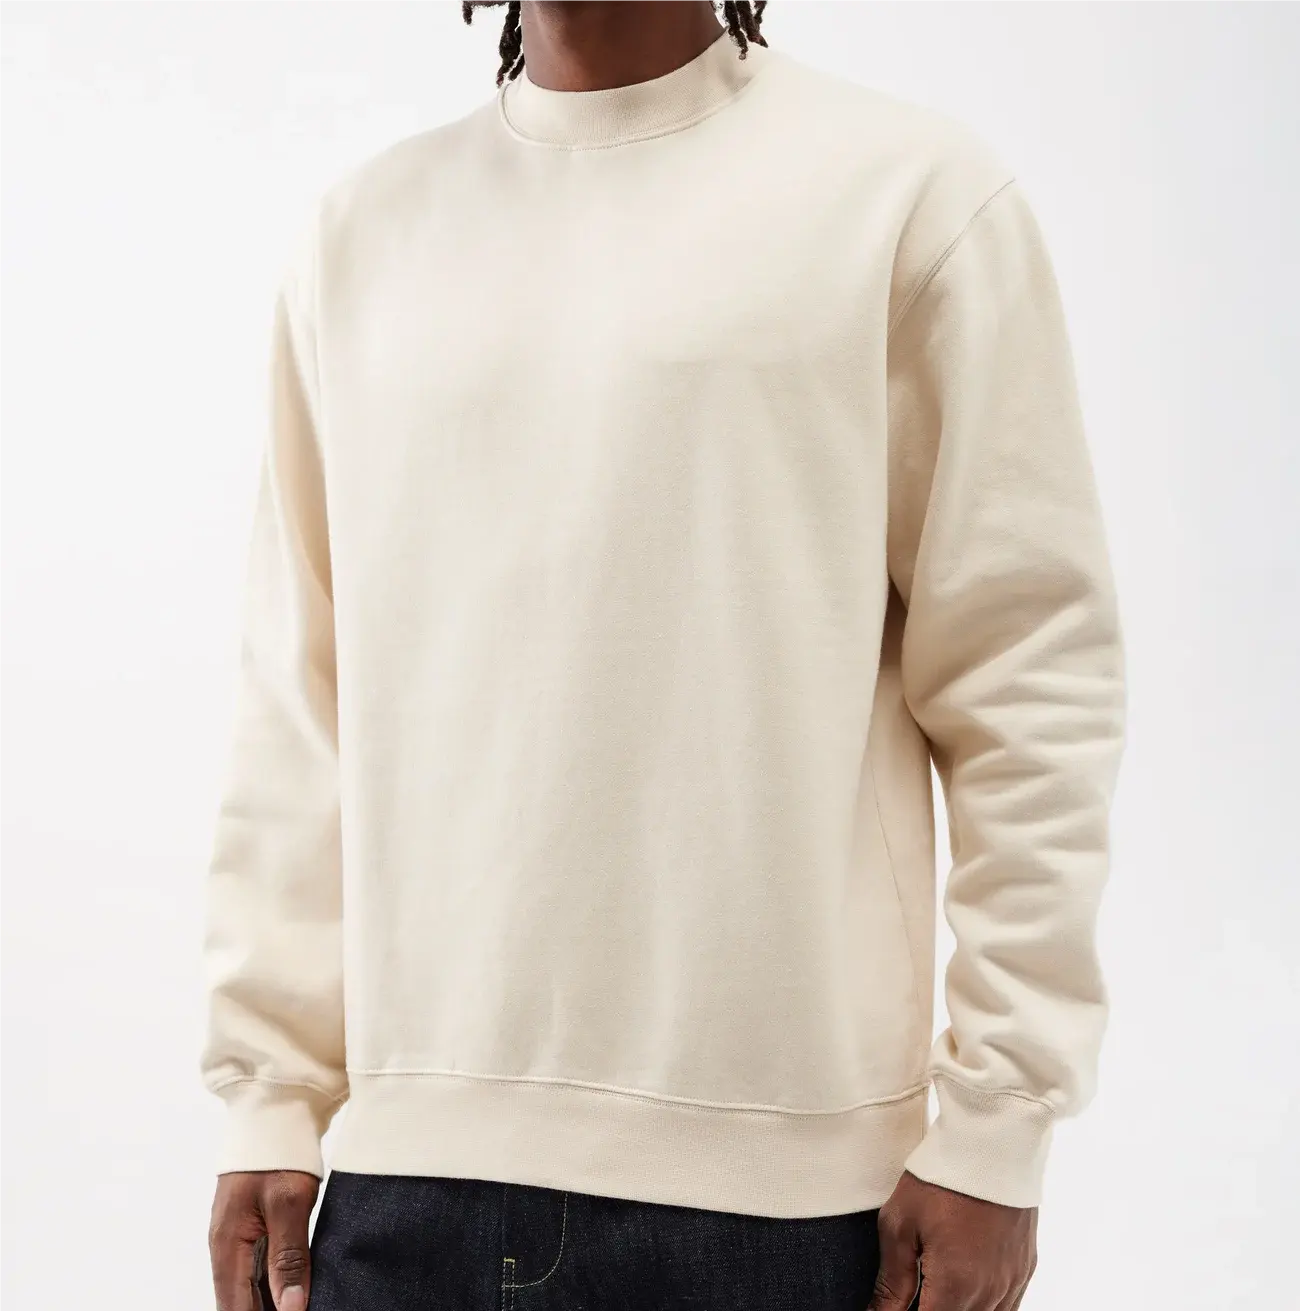 Hochwertiges Luxus-Sweatshirt Unisex Schweres, geripptes Sweatshirt mit Rundhals ausschnitt